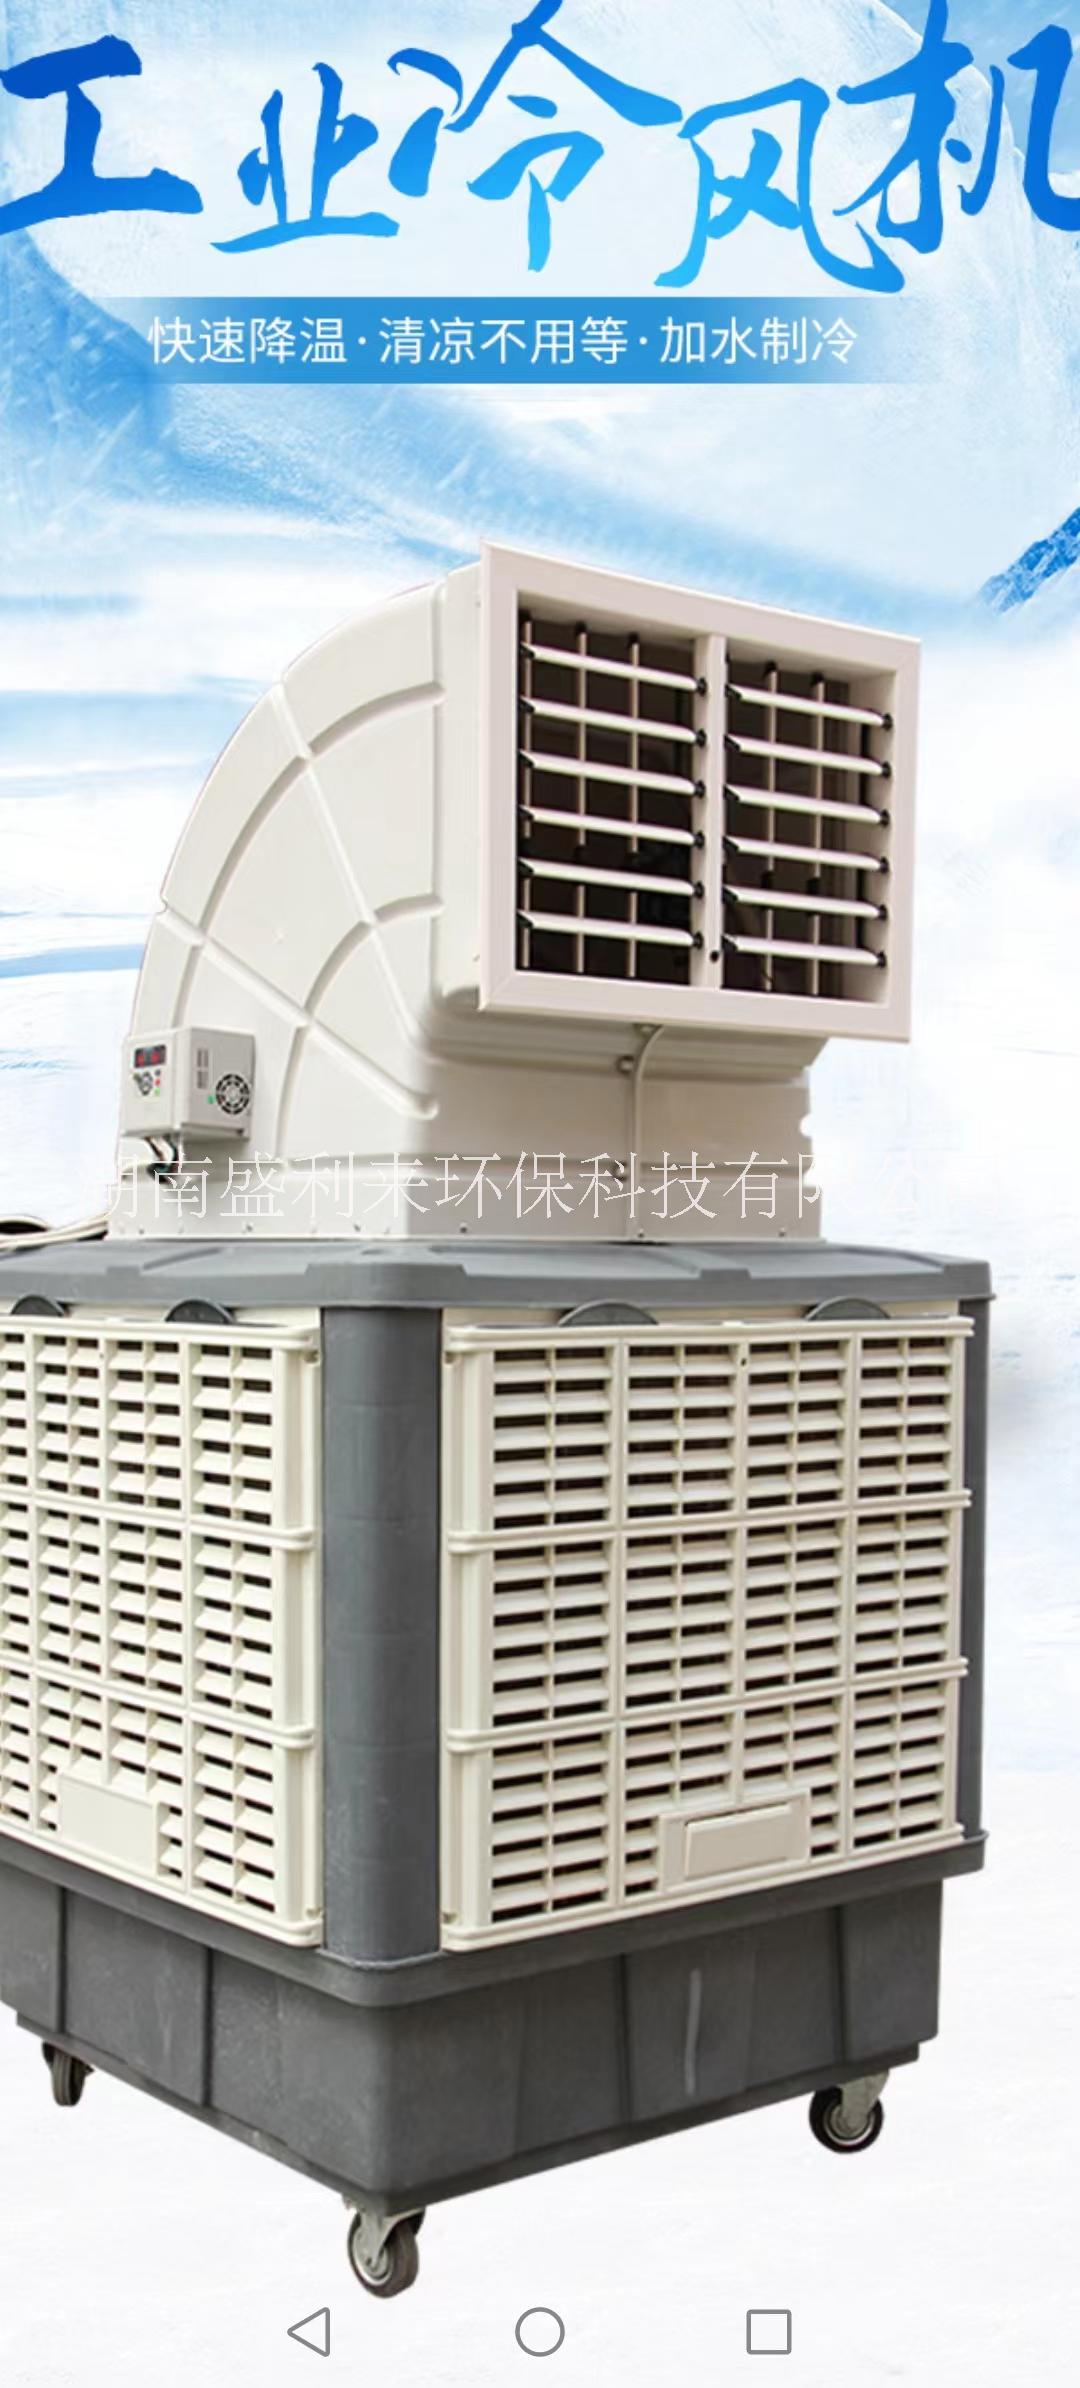 株洲刘阳移动式变频环保空调/蒸发式水冷空调